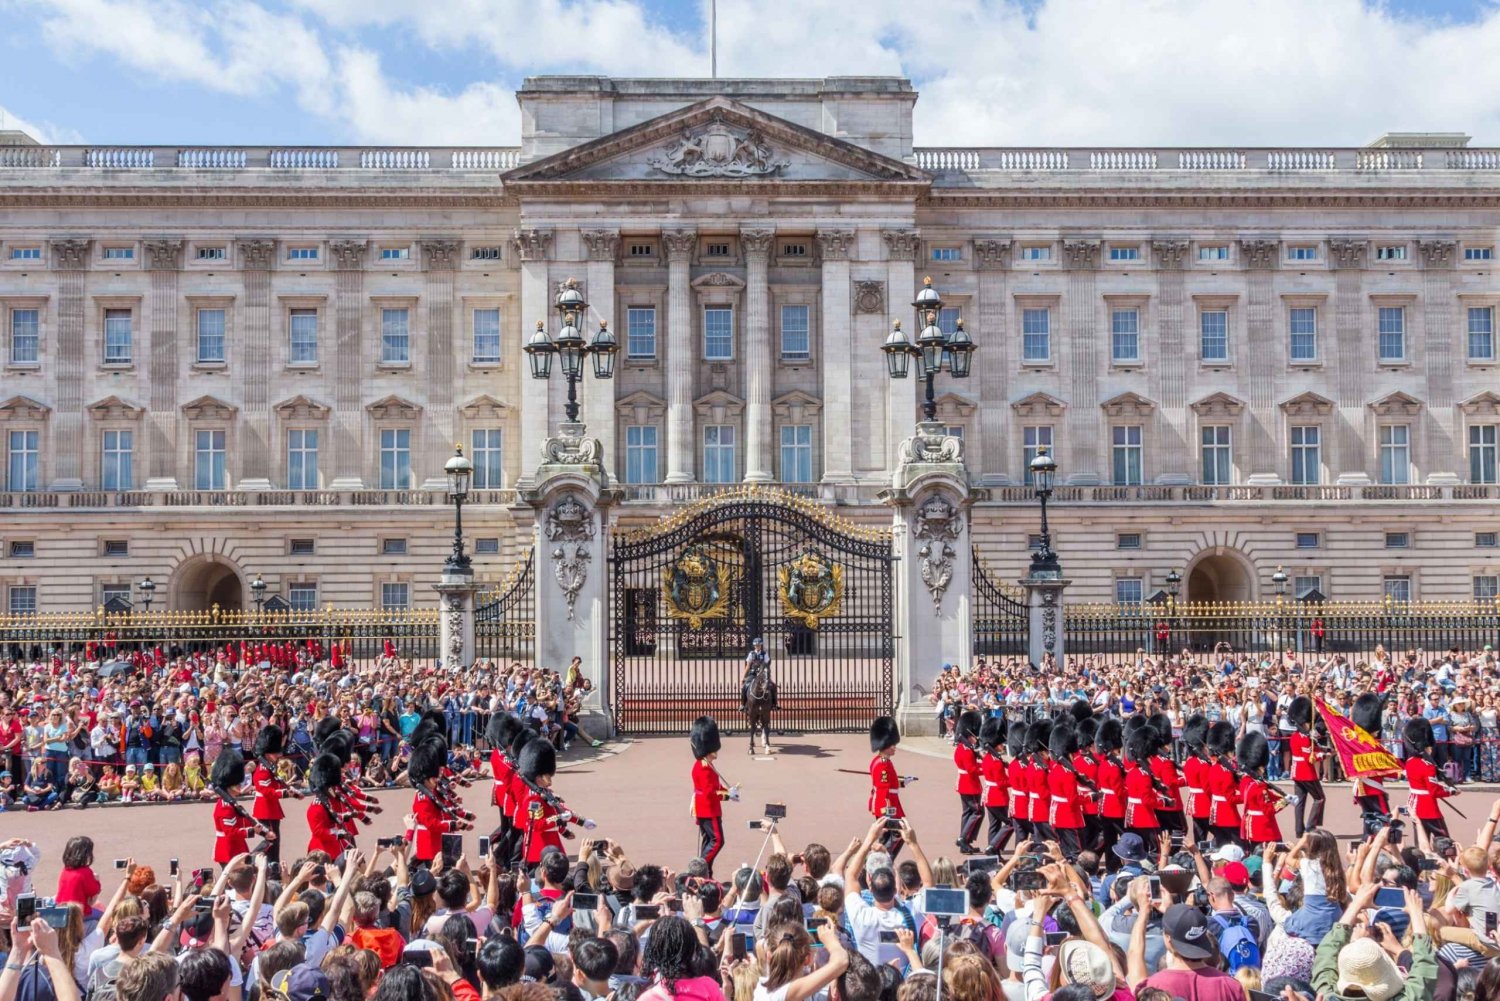 London: Biljett till Buckingham Palace och Afternoon Tea